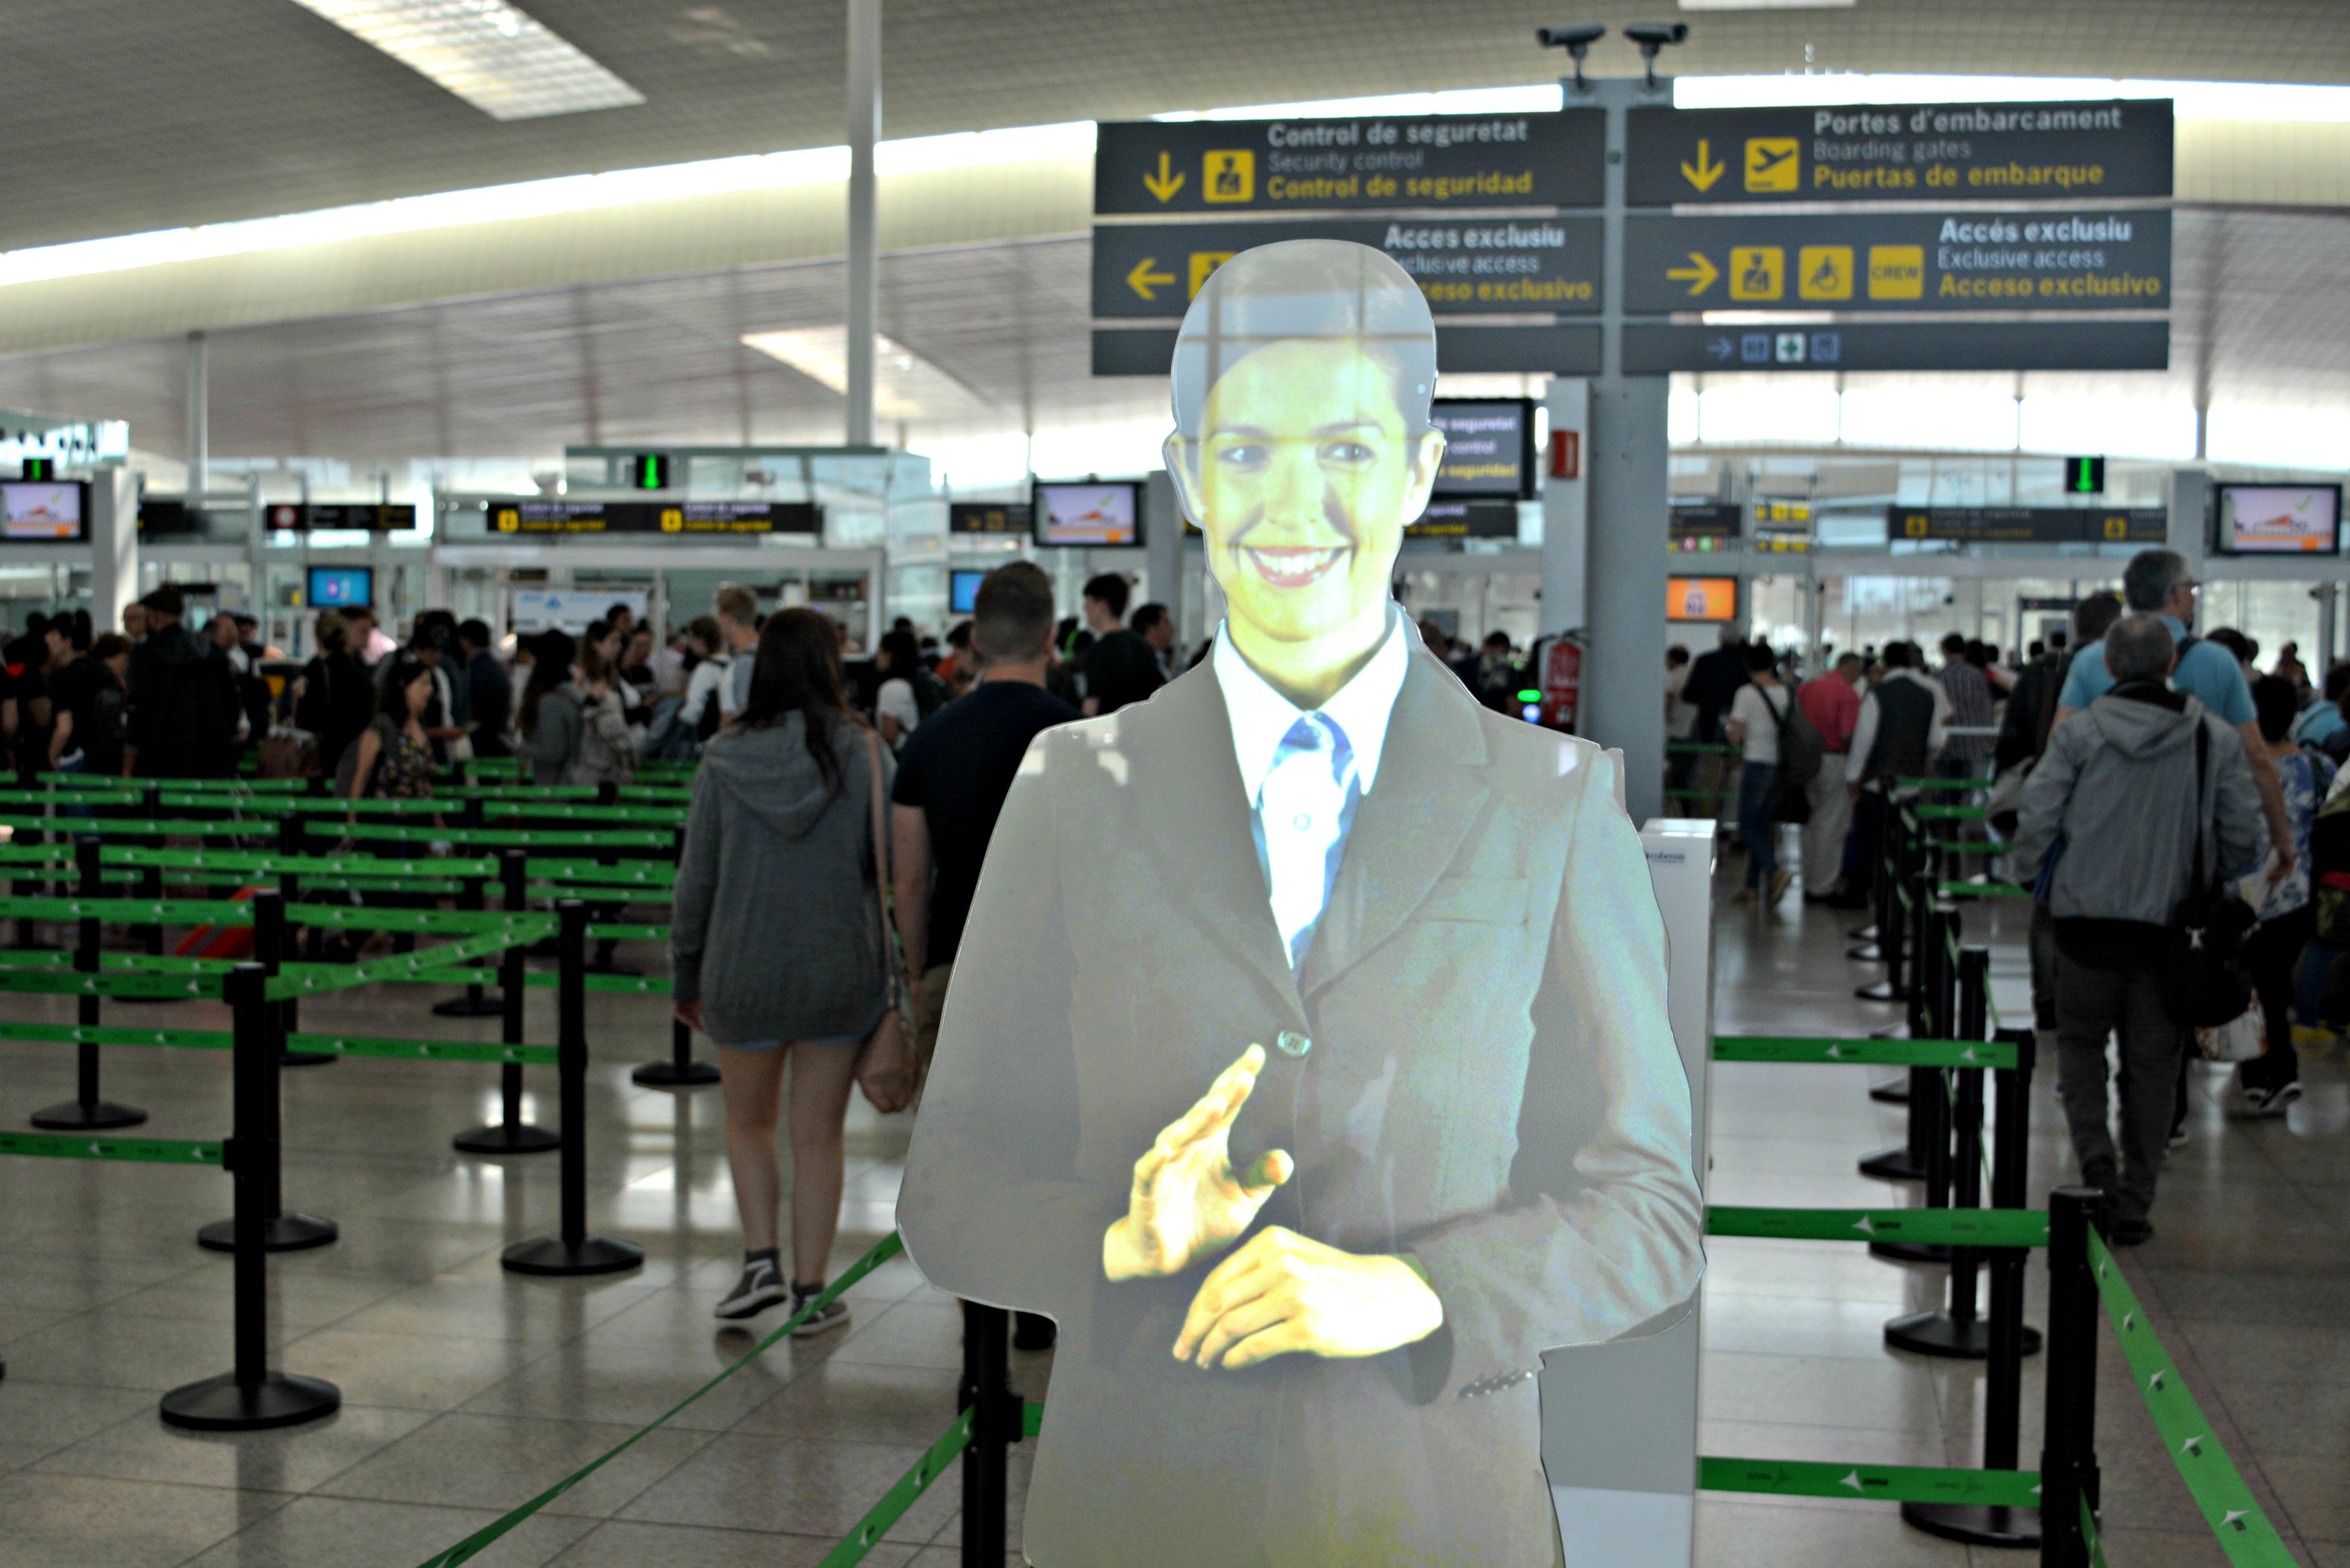 El Prat instal·la un holograma com a assistent virtual als filtres de seguretat